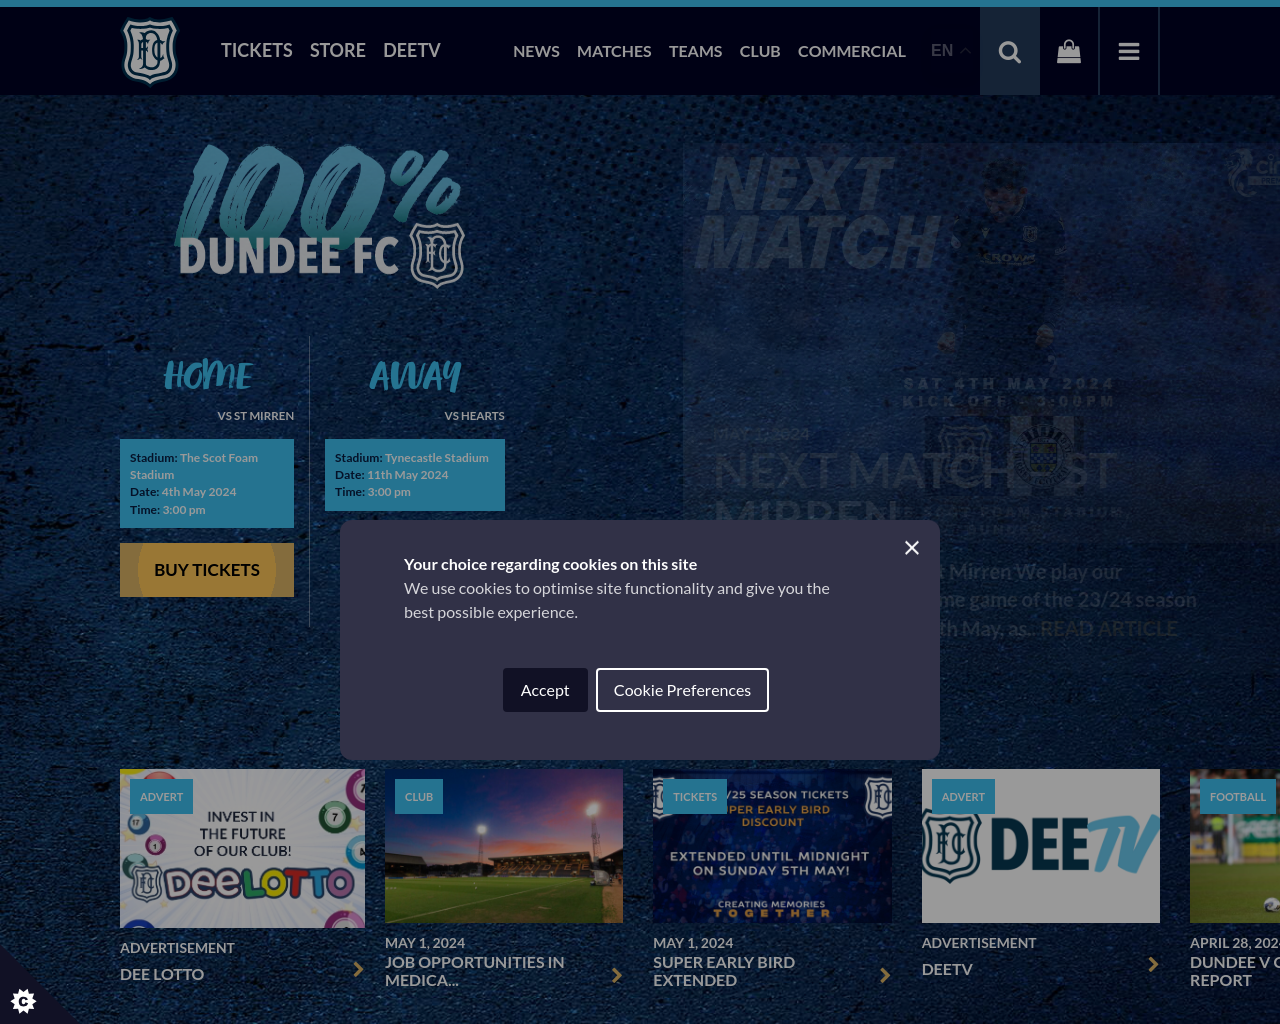 dundeefc.co.uk